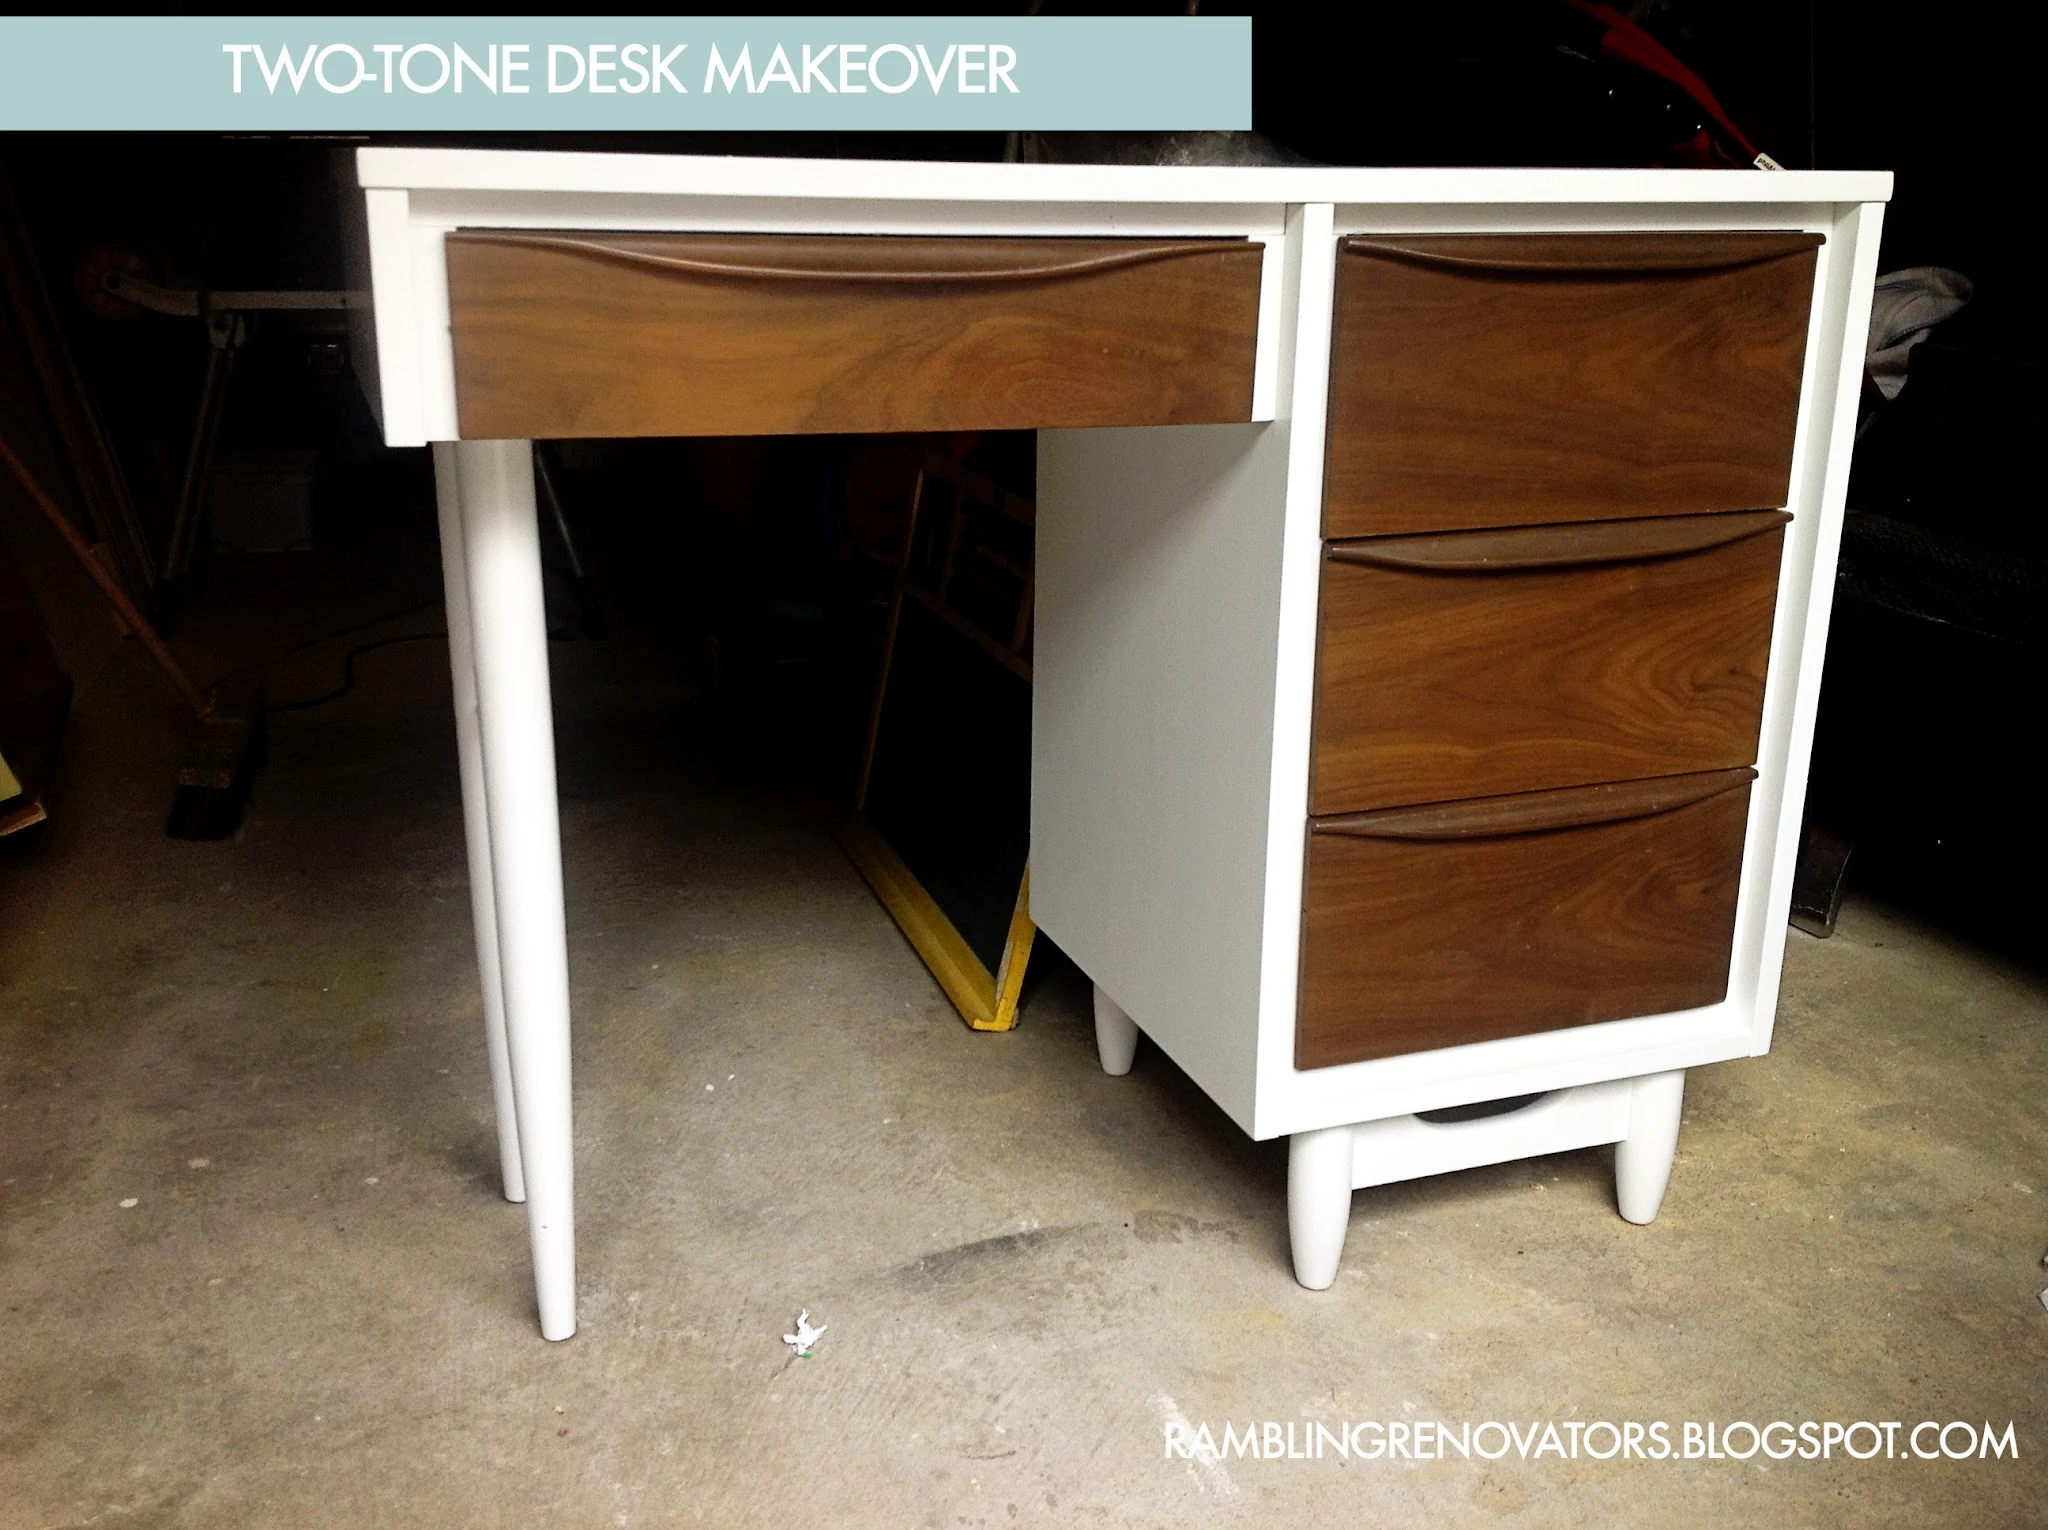 vintage desk makeover, two tone desk makeover, painted desk makeover